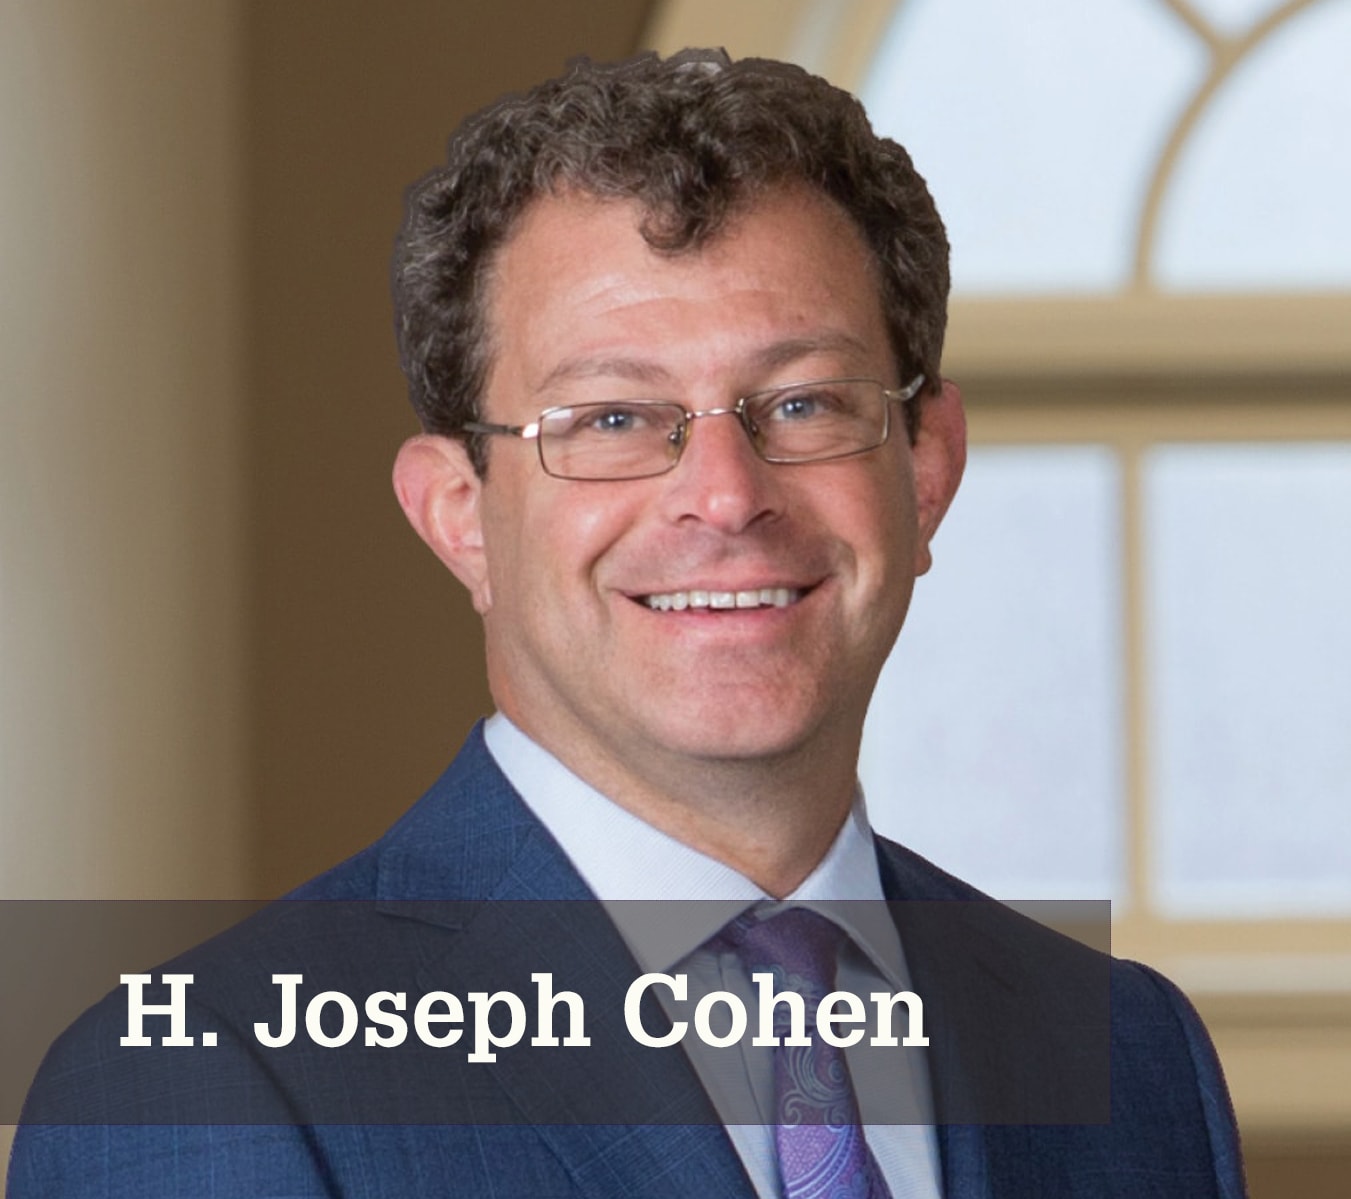 H. Joseph Cohen